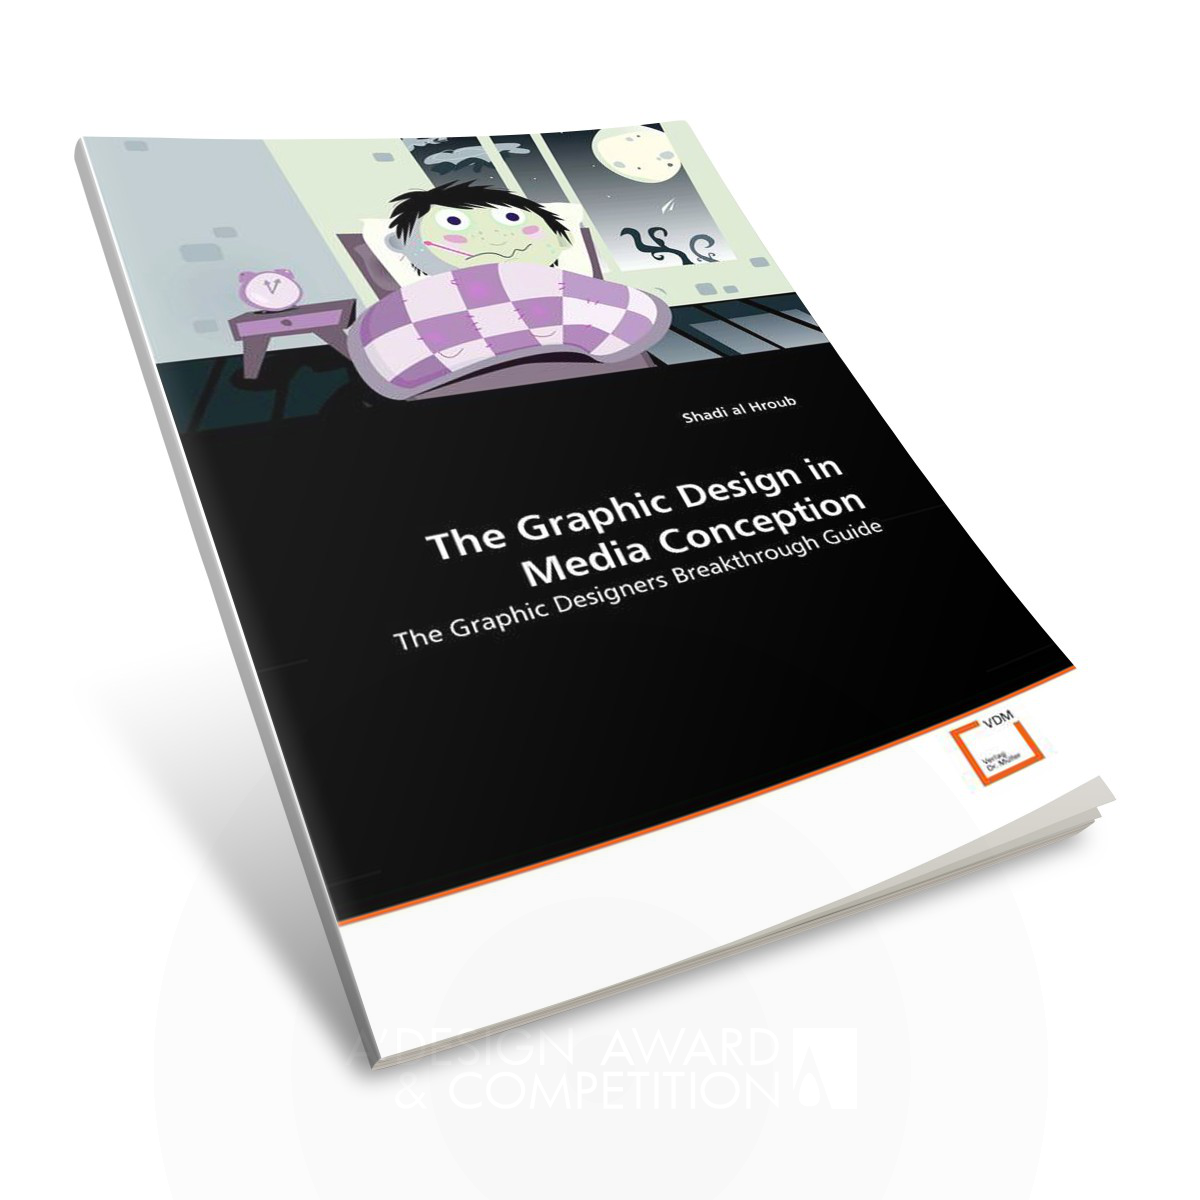 The Graphic Design in Media Conception <b>Book Design